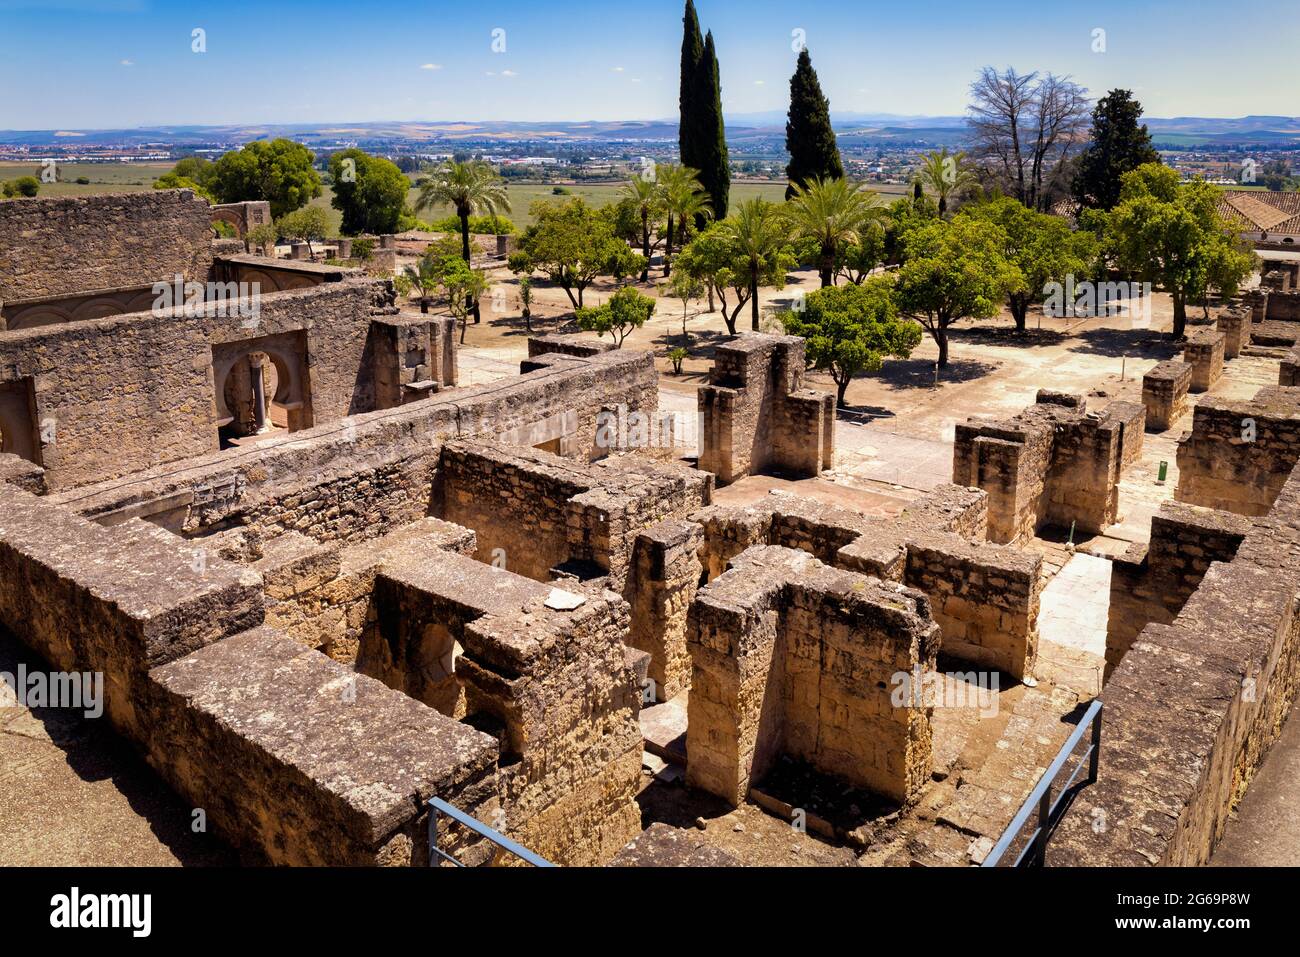 Vista general del Alto Nivel en el palacio fortificado del siglo 10th y la ciudad de Medina Azahara, también conocida como Madinat al-Zahra, provincia de Córdoba, Spa Foto de stock